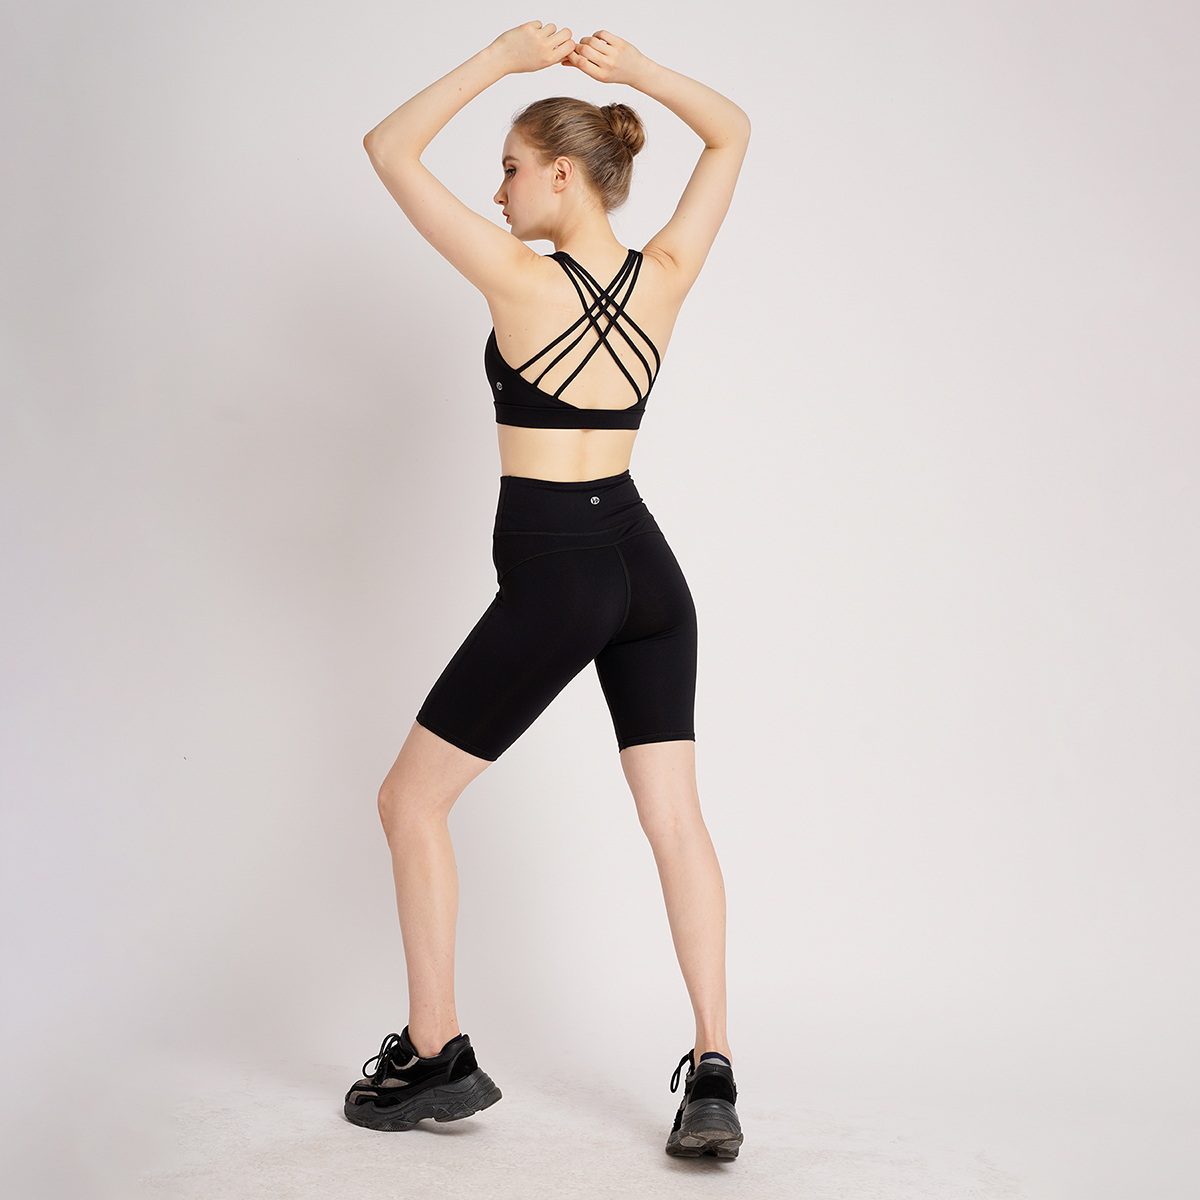 Set Quần áo tập Yoga Gym đùi 6 dây thiết kế cao cấp Hibi Sports Áo 6 dây đan - Quần lưng cao ngang gối năng động H112 - Áo có mút nâng ngực